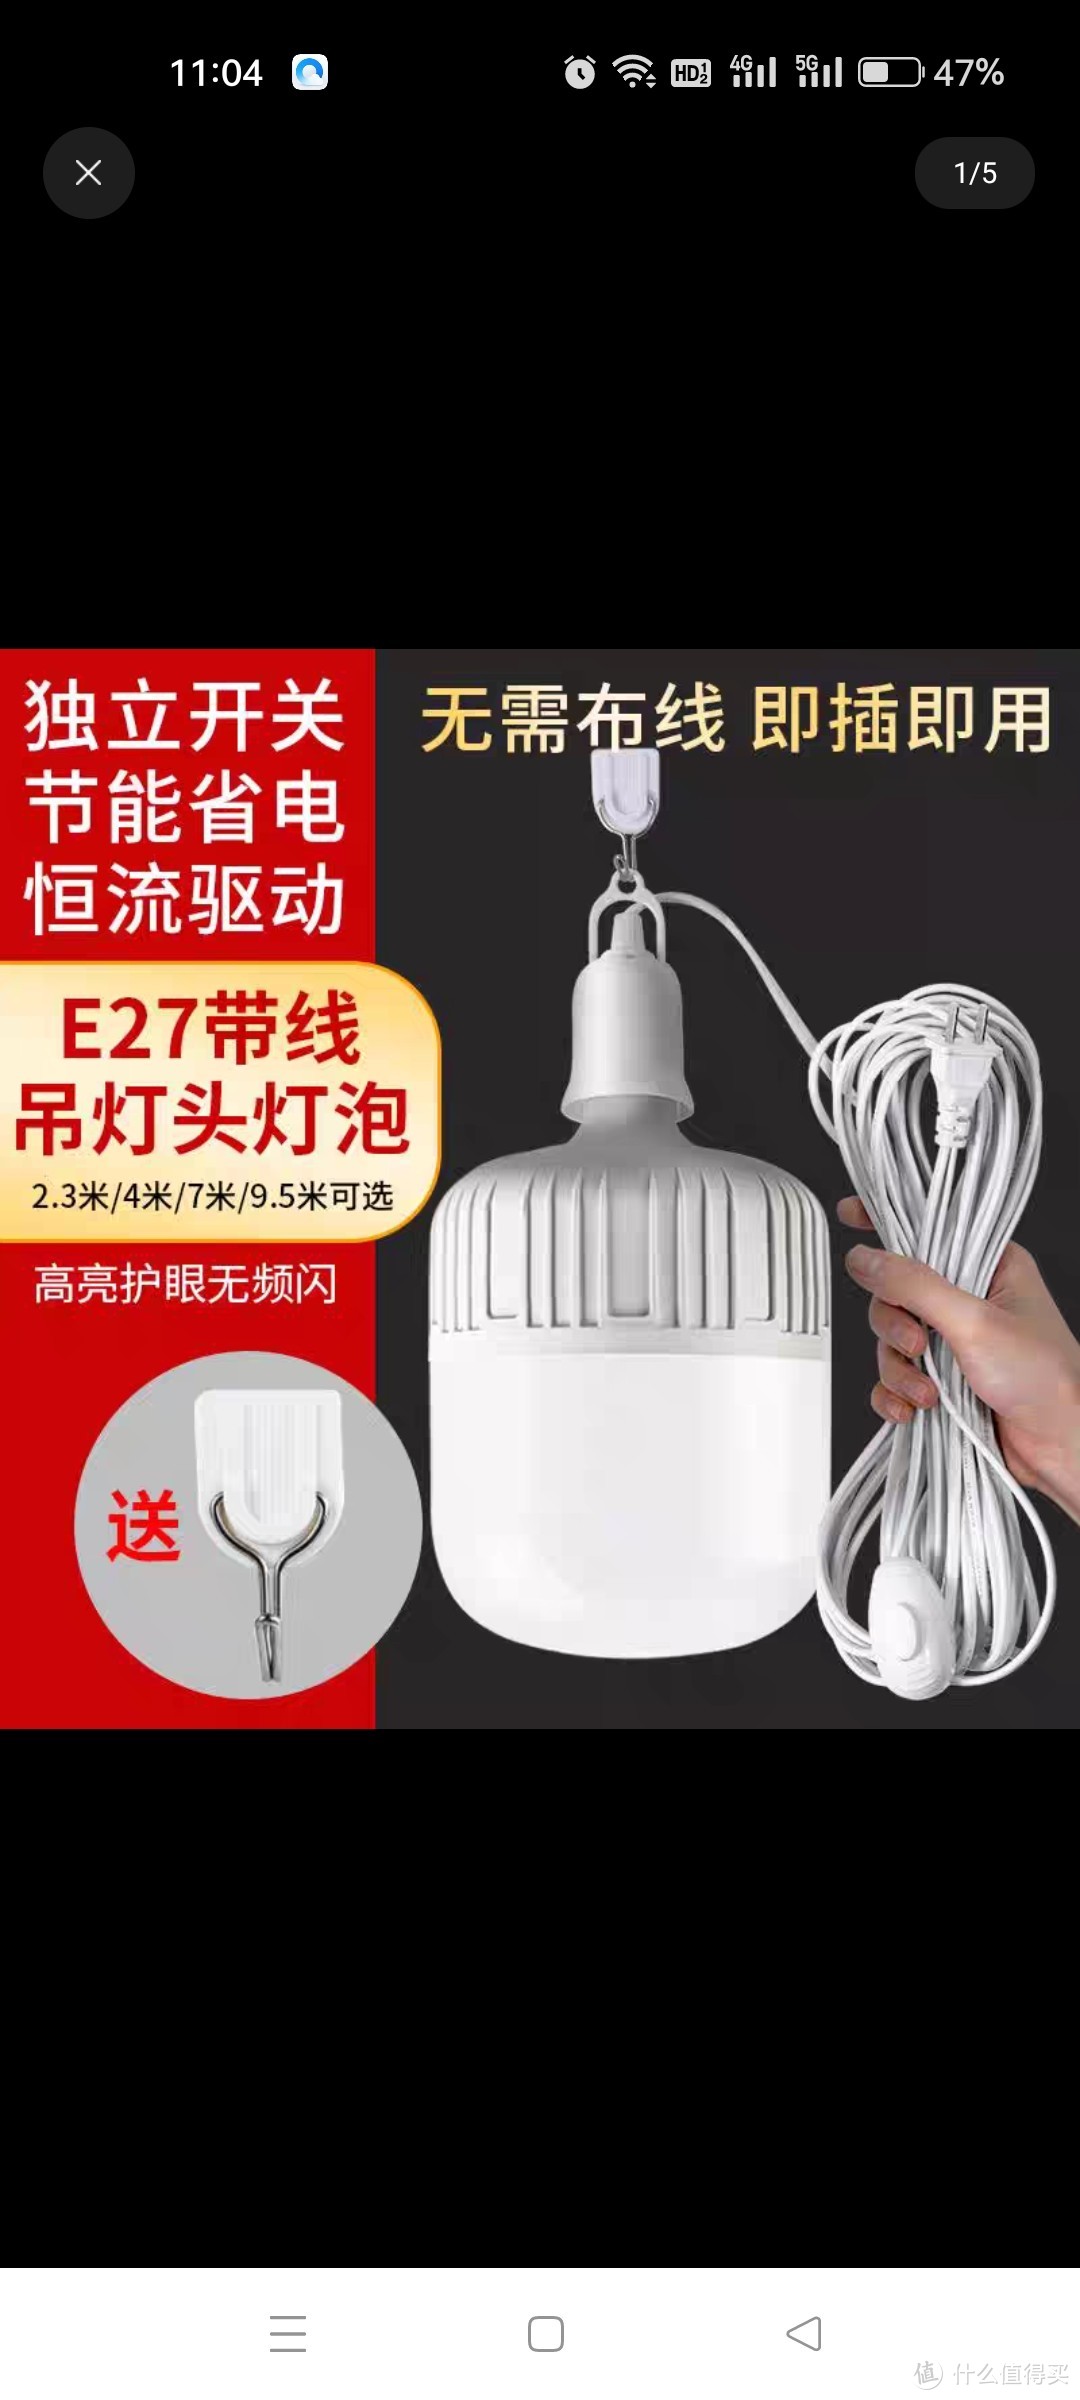 家用LED灯泡简易插座灯E27带插头开关线超亮节能灯悬挂式螺口灯座